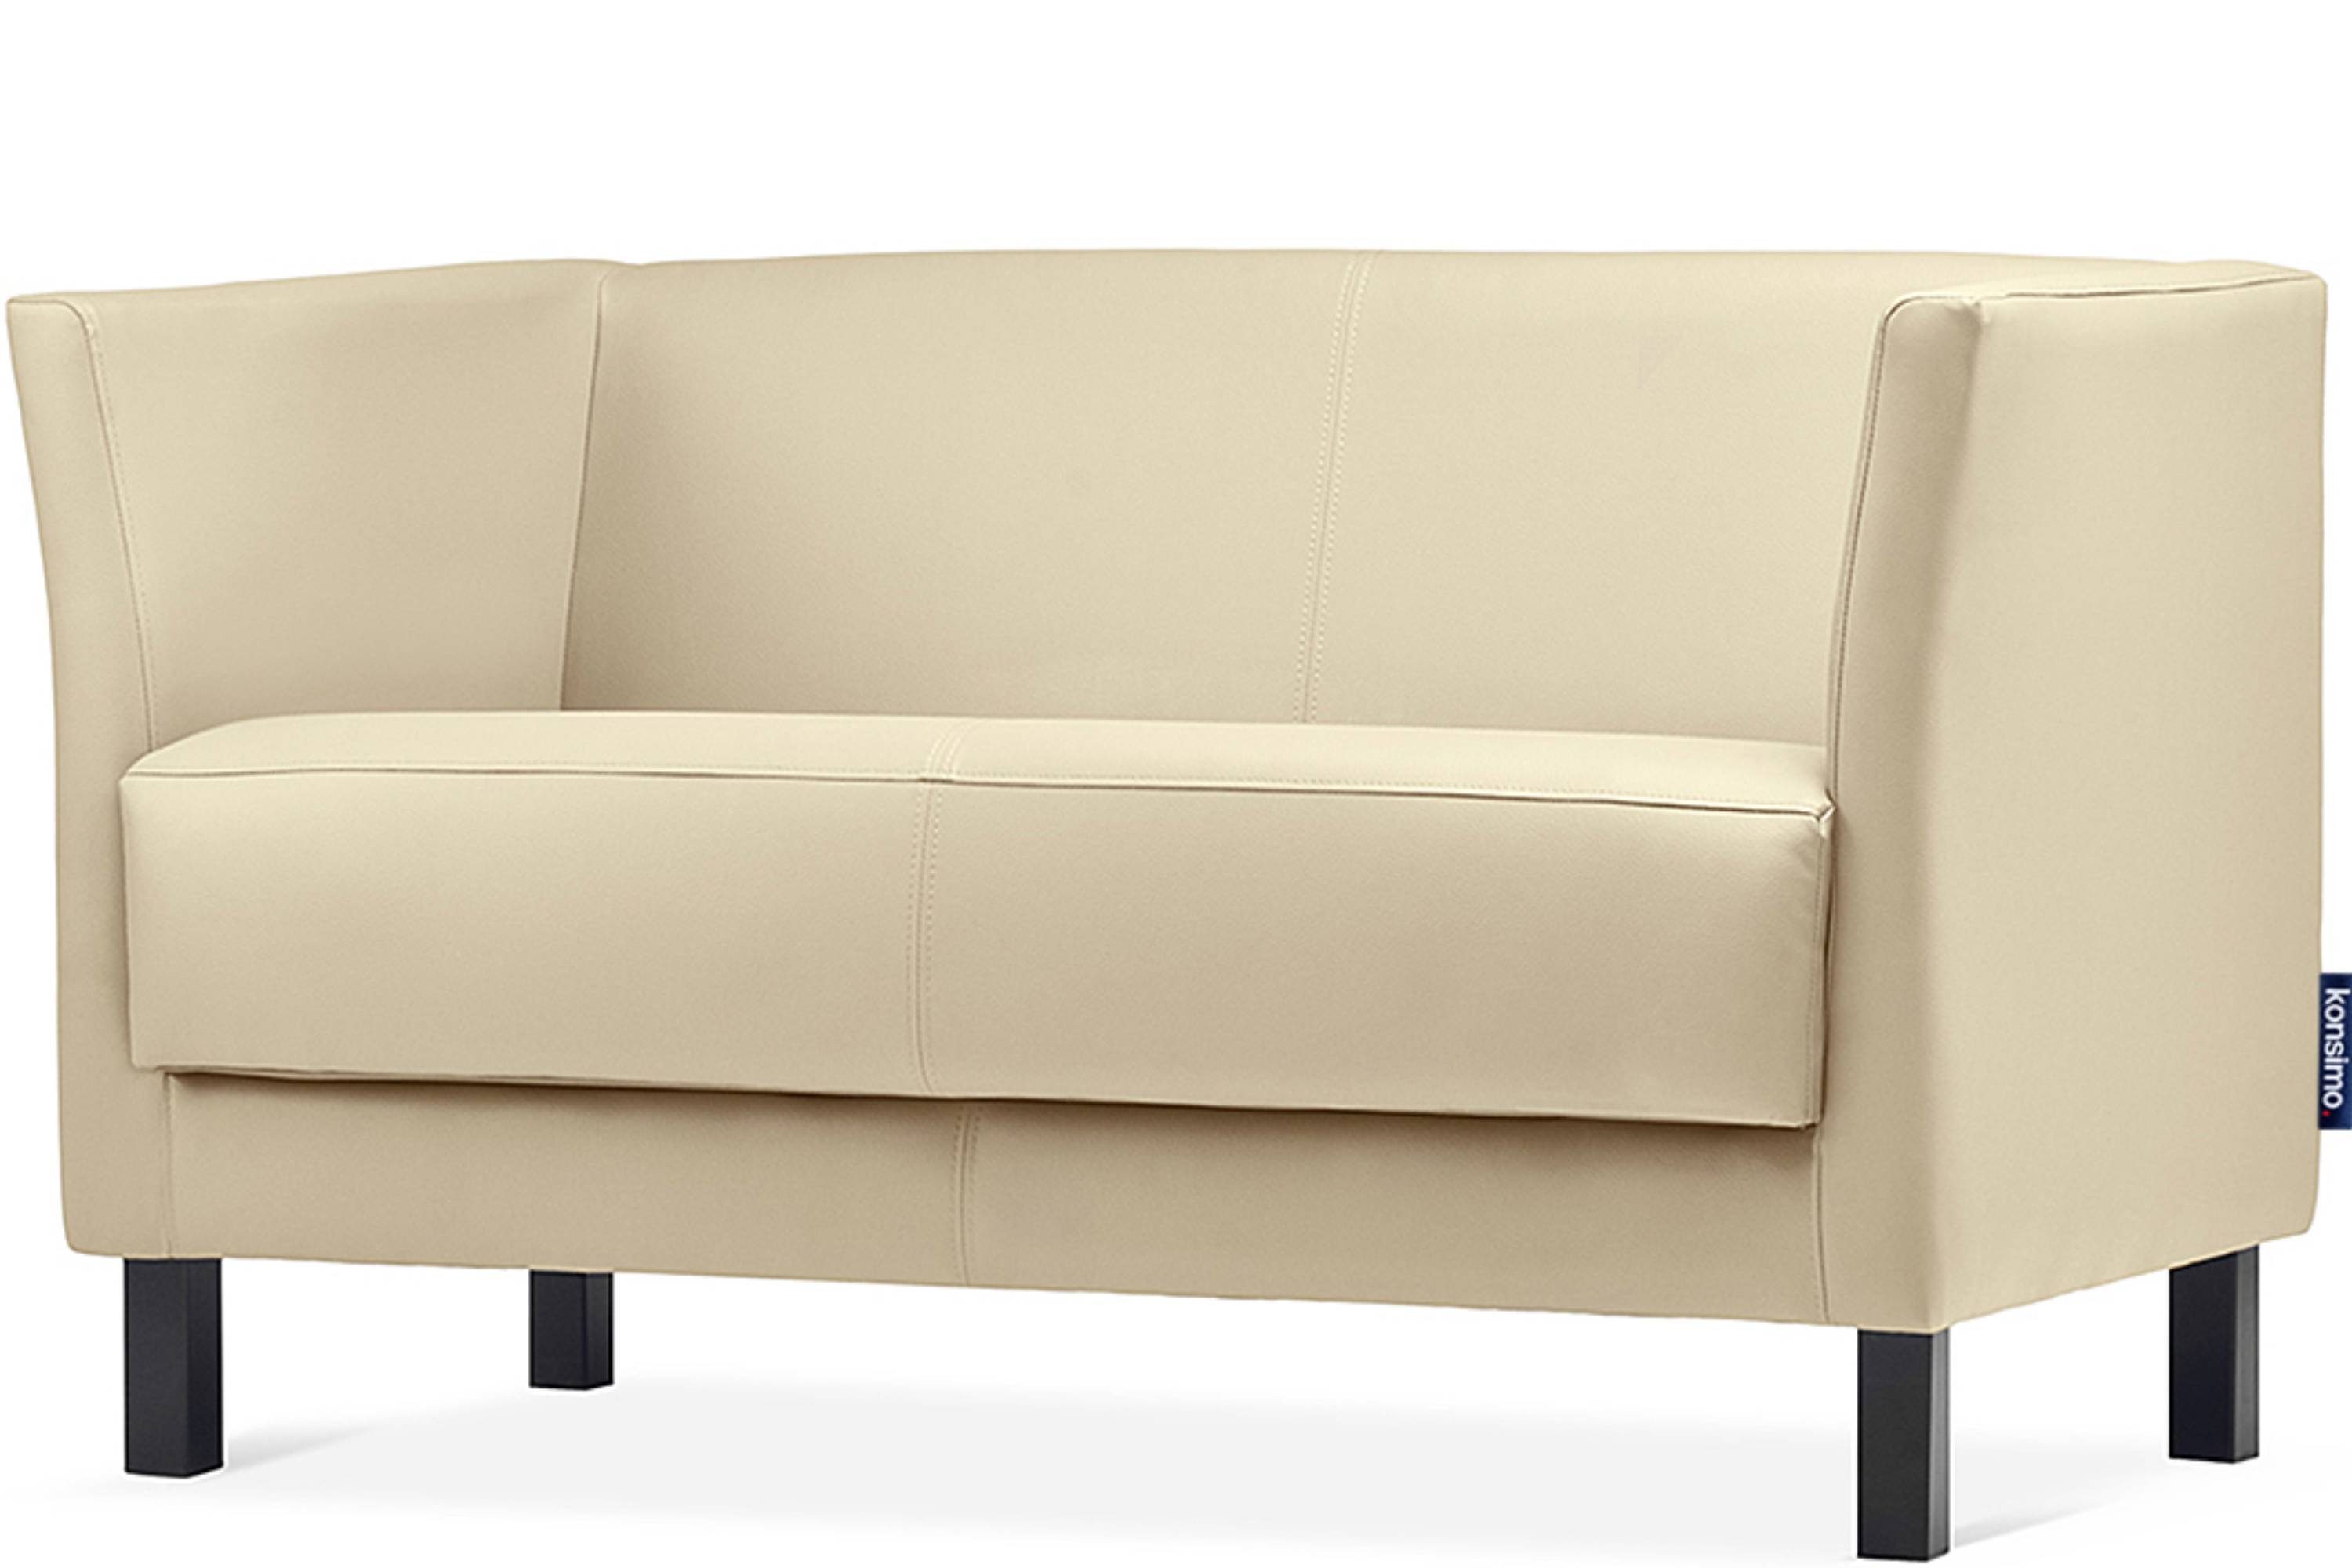 ESPECTO creme Sofa hohe Rückenlehne, creme Massivholzbeine 2-Sitzer hohe Sitzfläche 2 und Personen, | Konsimo Kunstleder, weiche